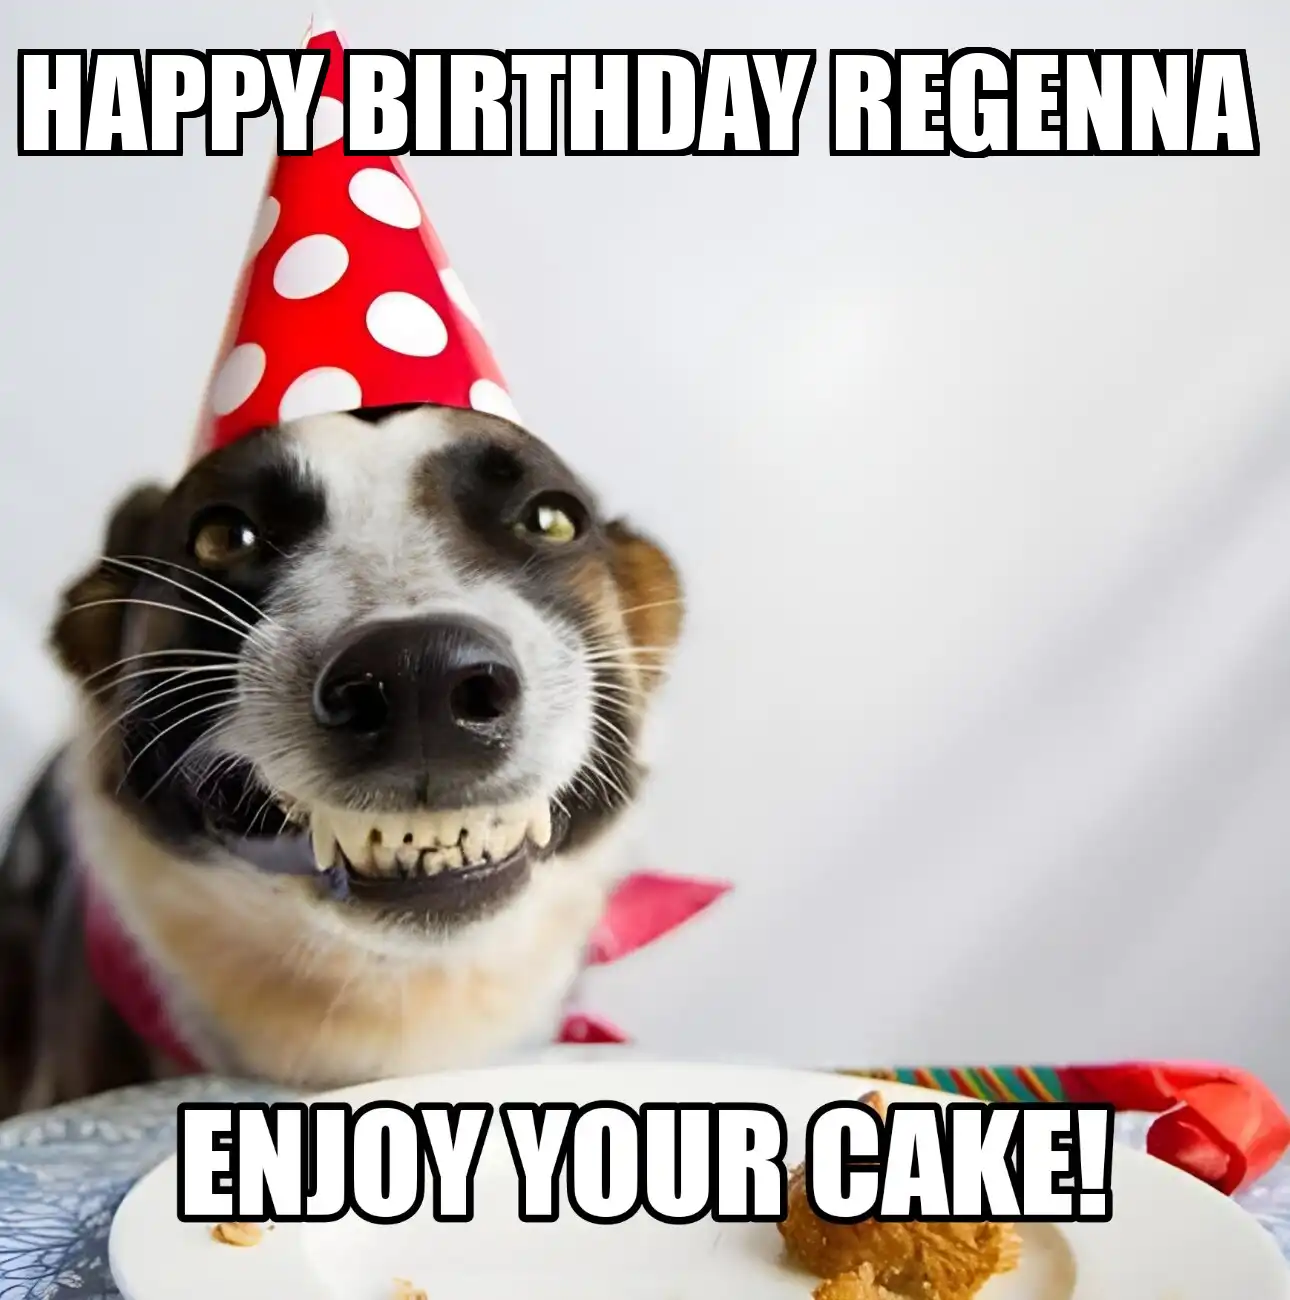 Happy Birthday Regenna Enjoy Your Cake Dog Meme